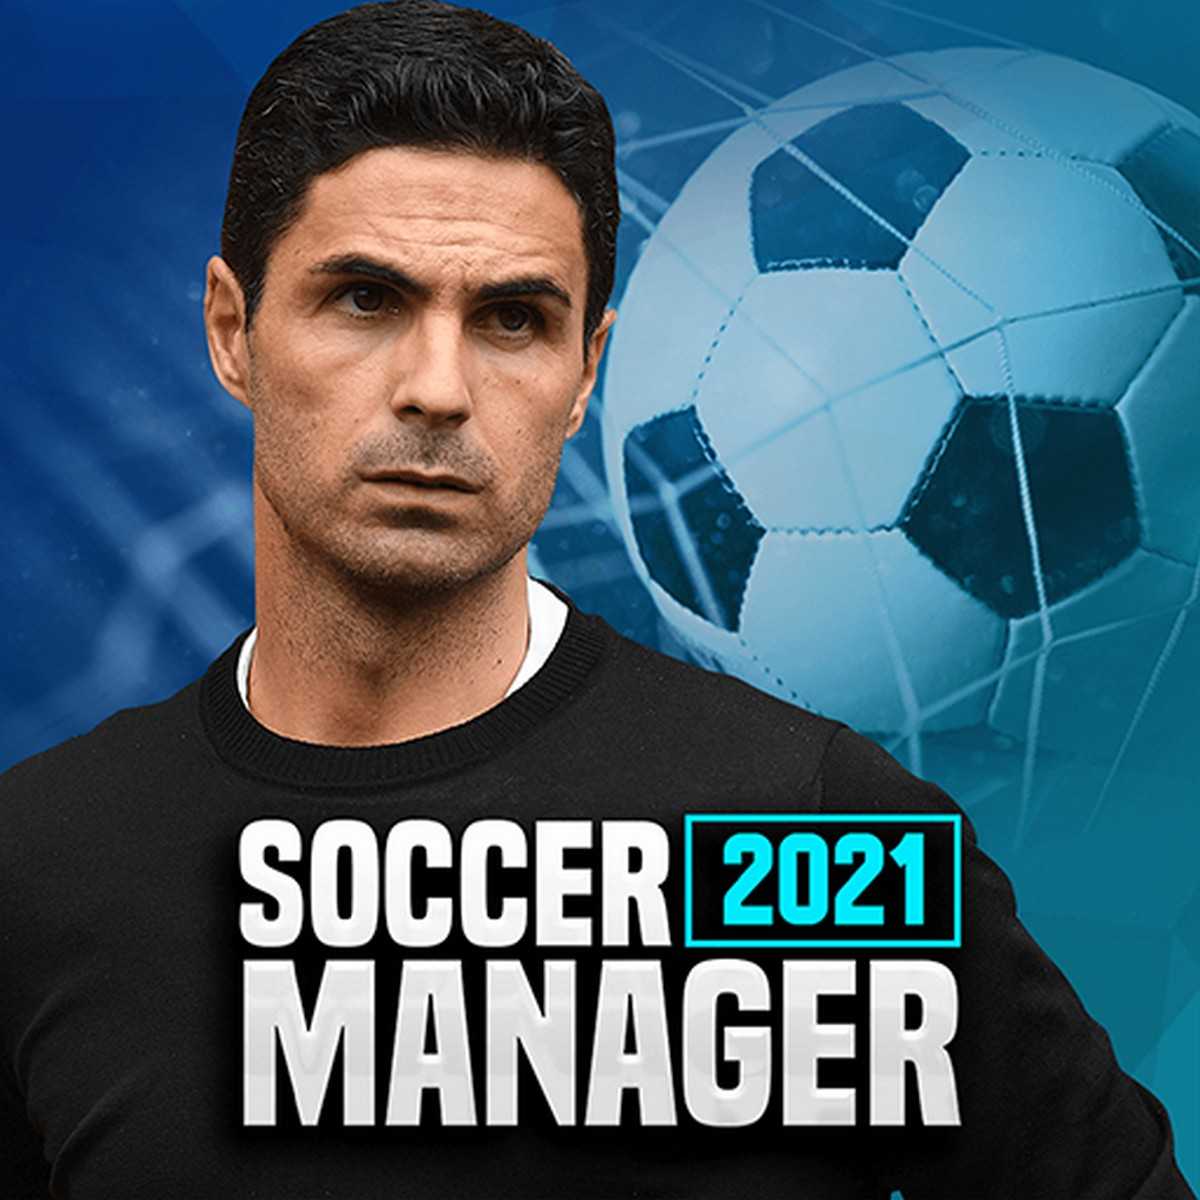 Soccer Manager 2021 – Football Management Game v1.1.3 (Mod Apk)